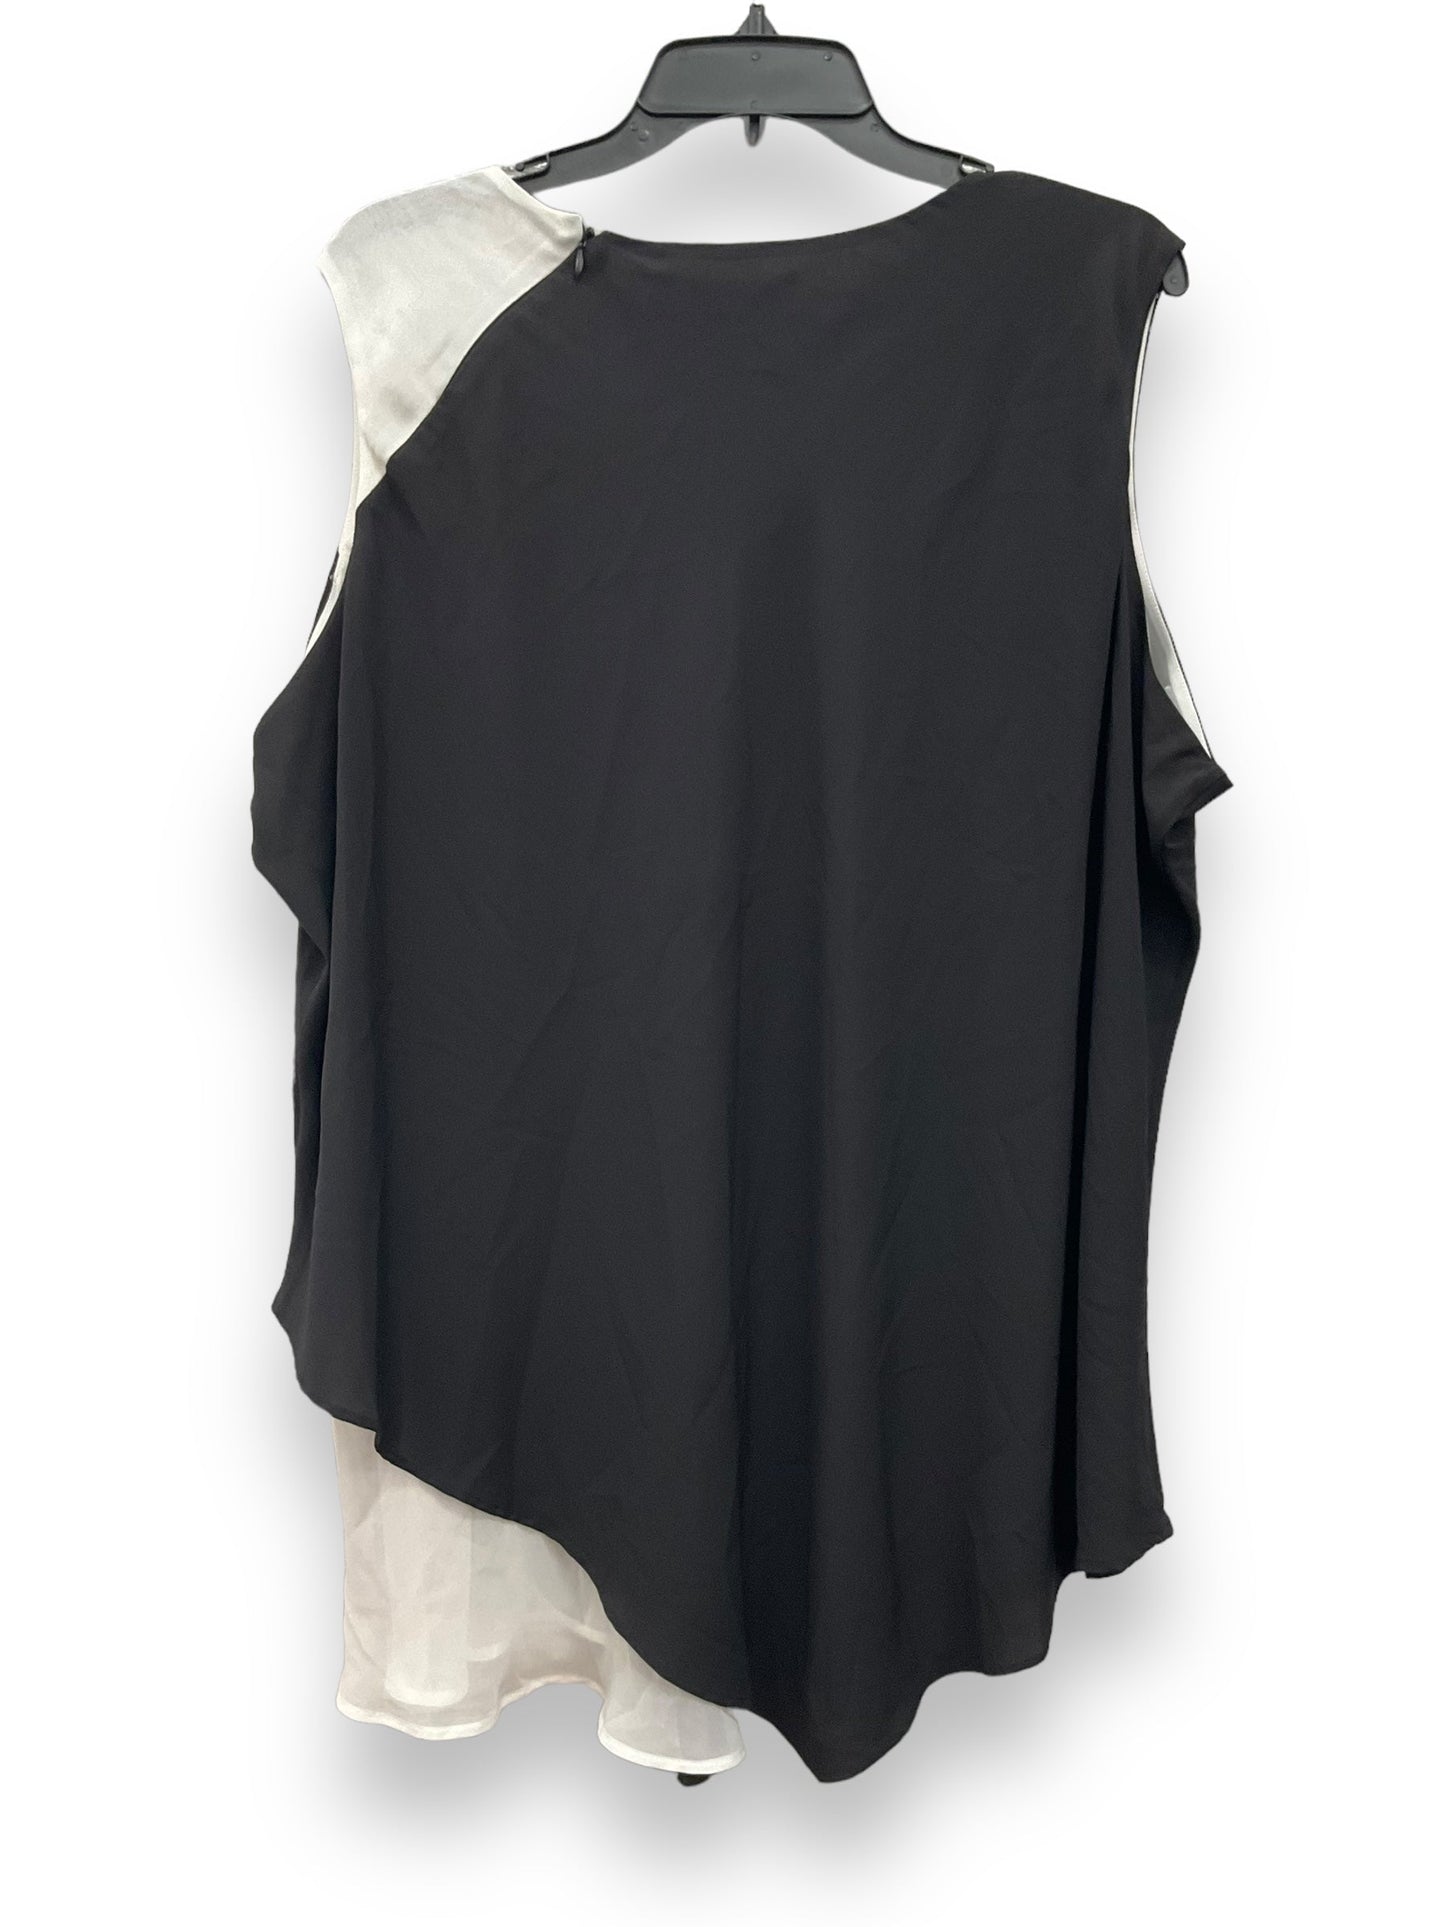 Black & White Blouse Sleeveless Calvin Klein, Size 2x